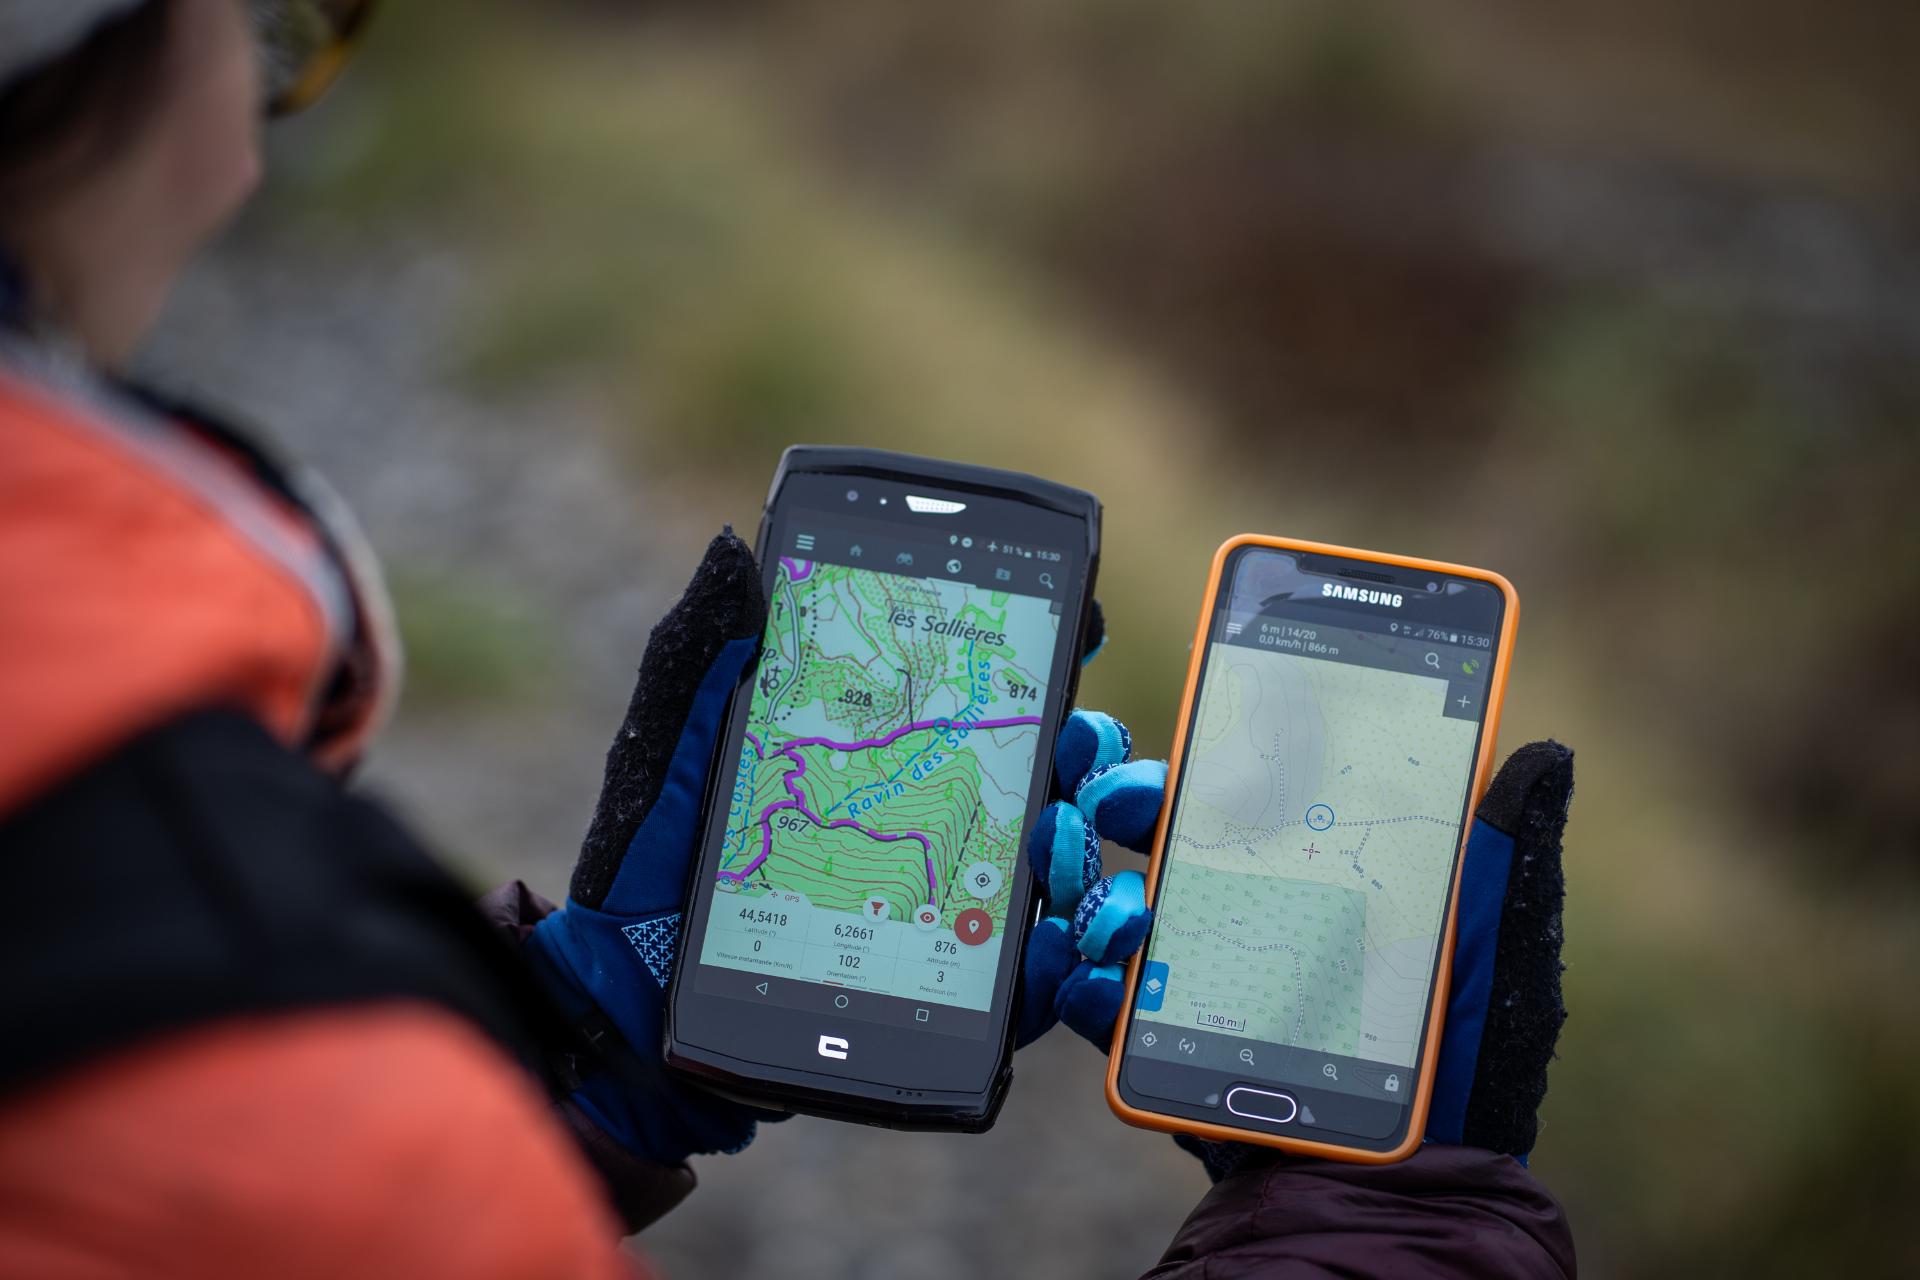 Comment choisir un bon GPS pour la pratique du Vtt ? –